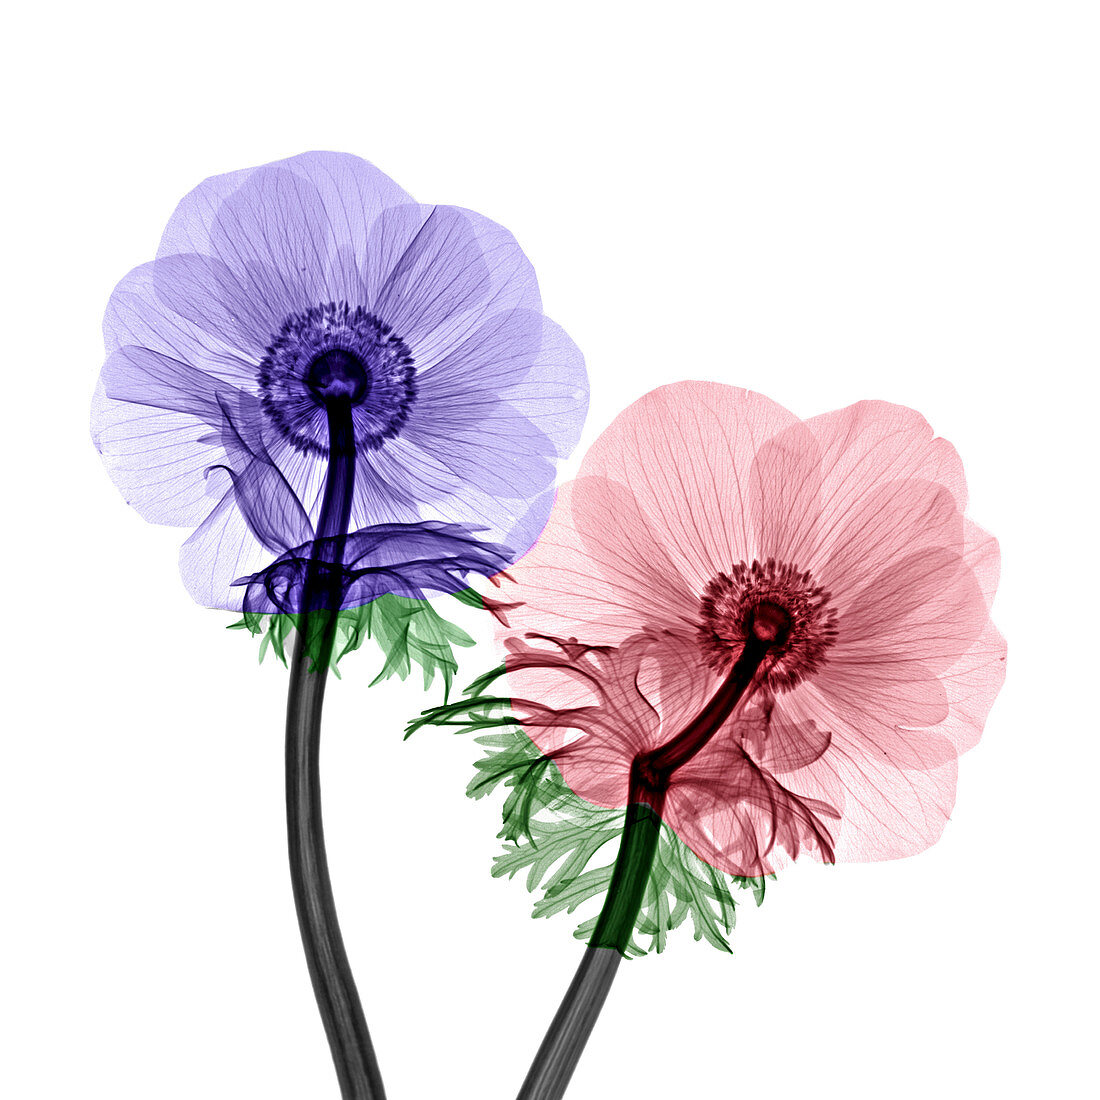 Anemone sp. flowers, X-ray